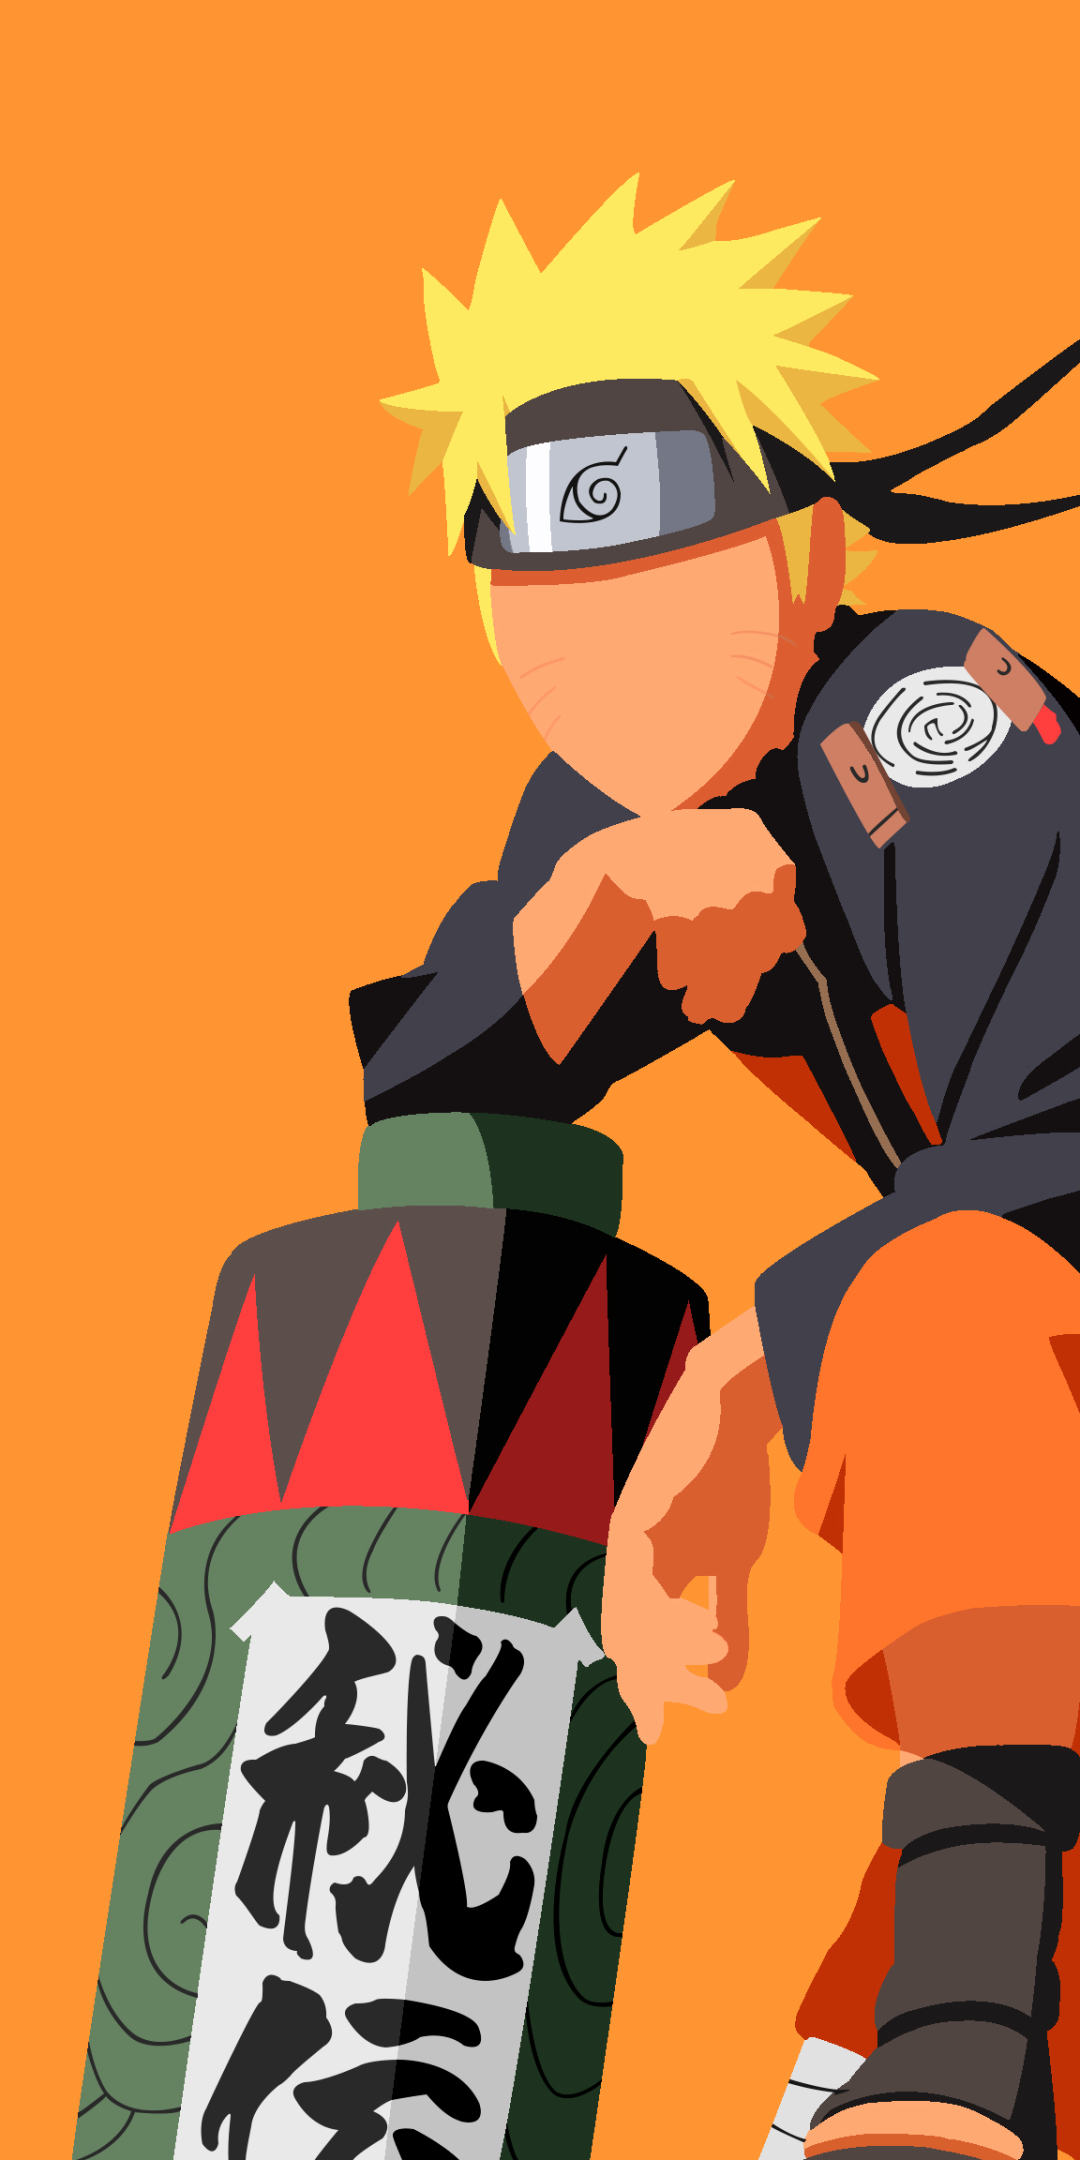 Naruto Hd Phone Wallpapers